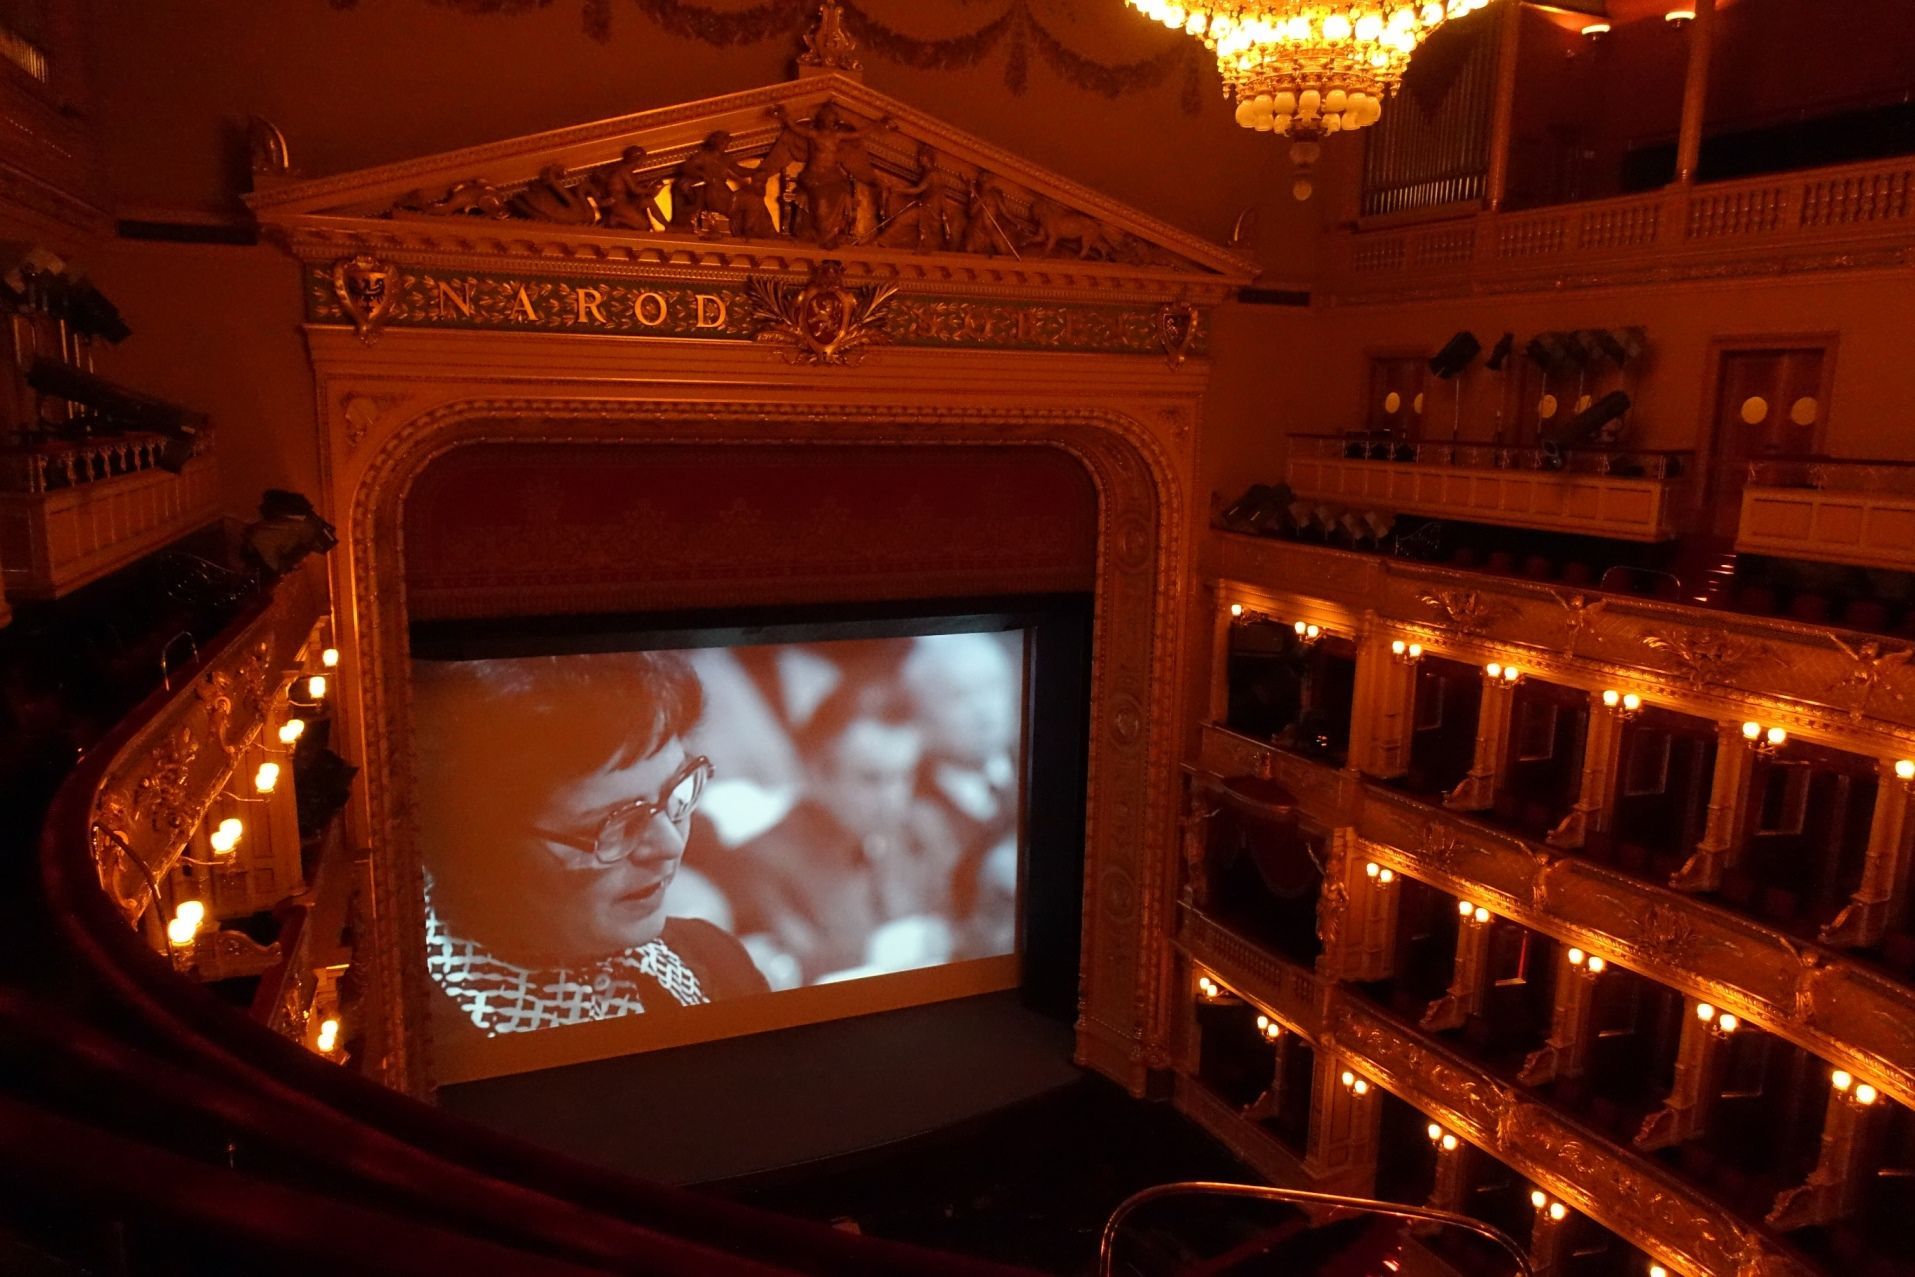 Anticharta - Jiřina Švorcová v Národním divadle